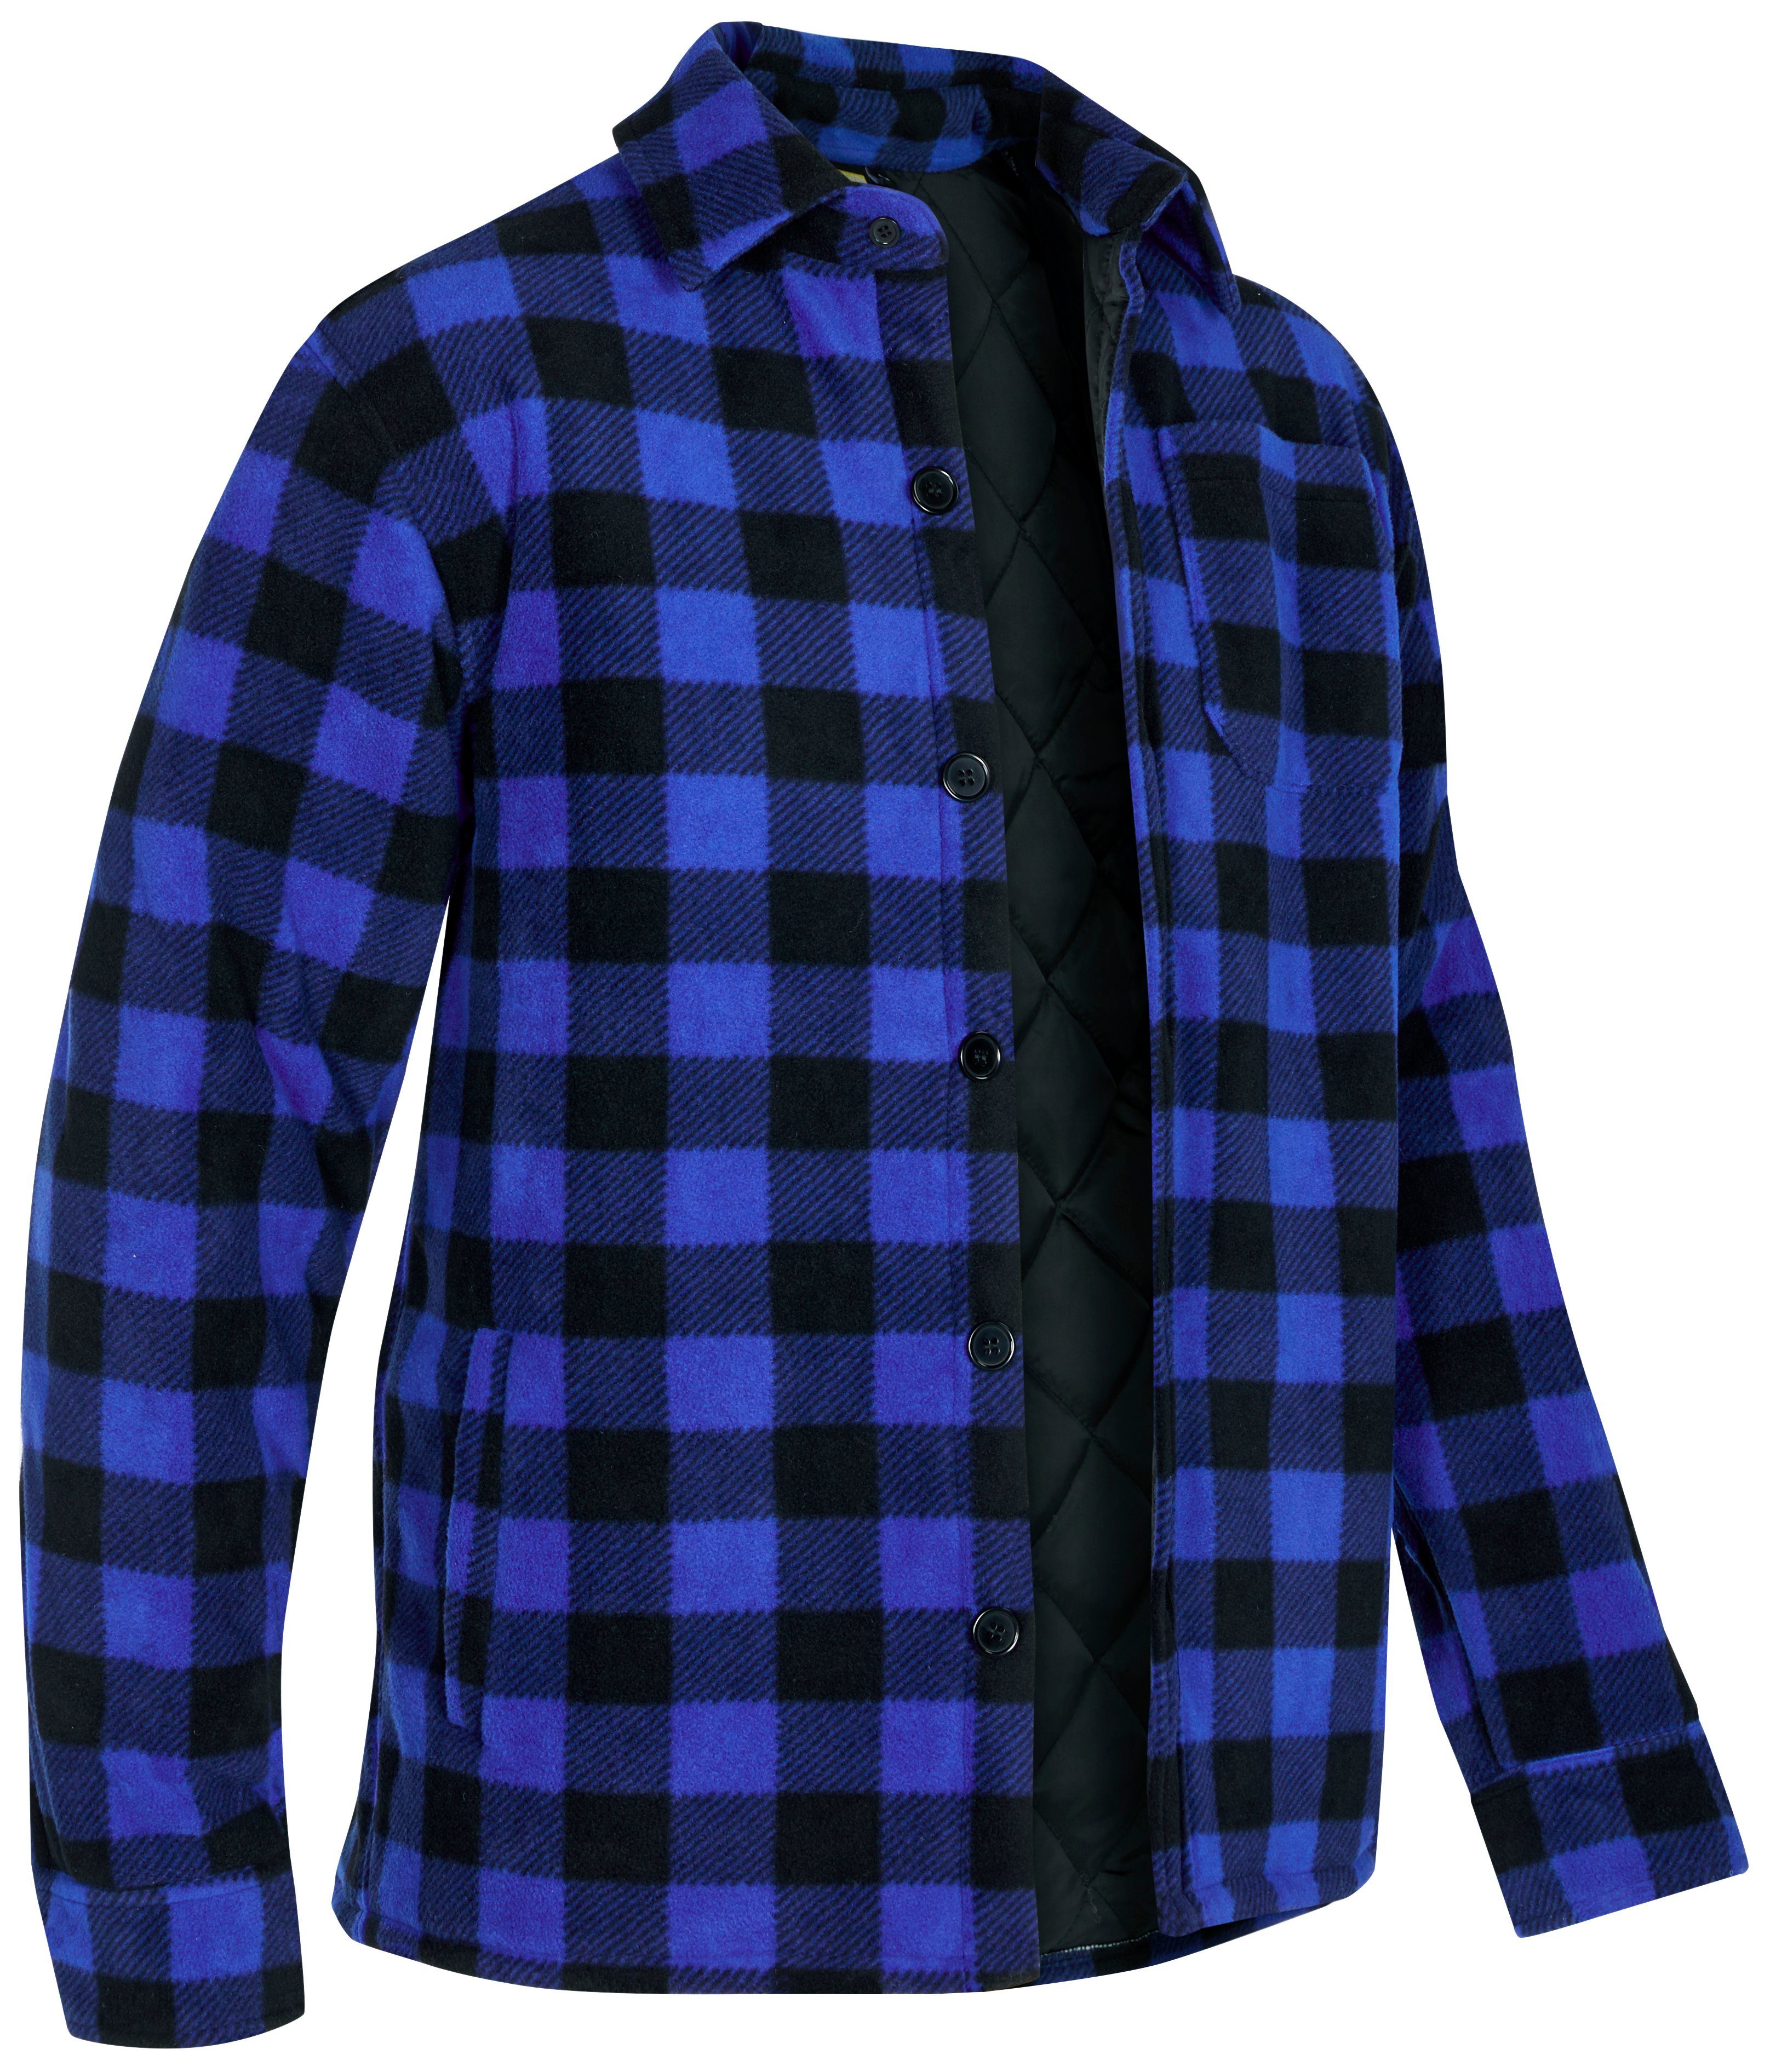 Jacke Flanellstoff offen oder Rücken, tragen) zu blau-schwarz mit gefüttert, Hemd Northern mit Flanellhemd verlängertem Taschen, (als warm zugeknöpft 5 Country